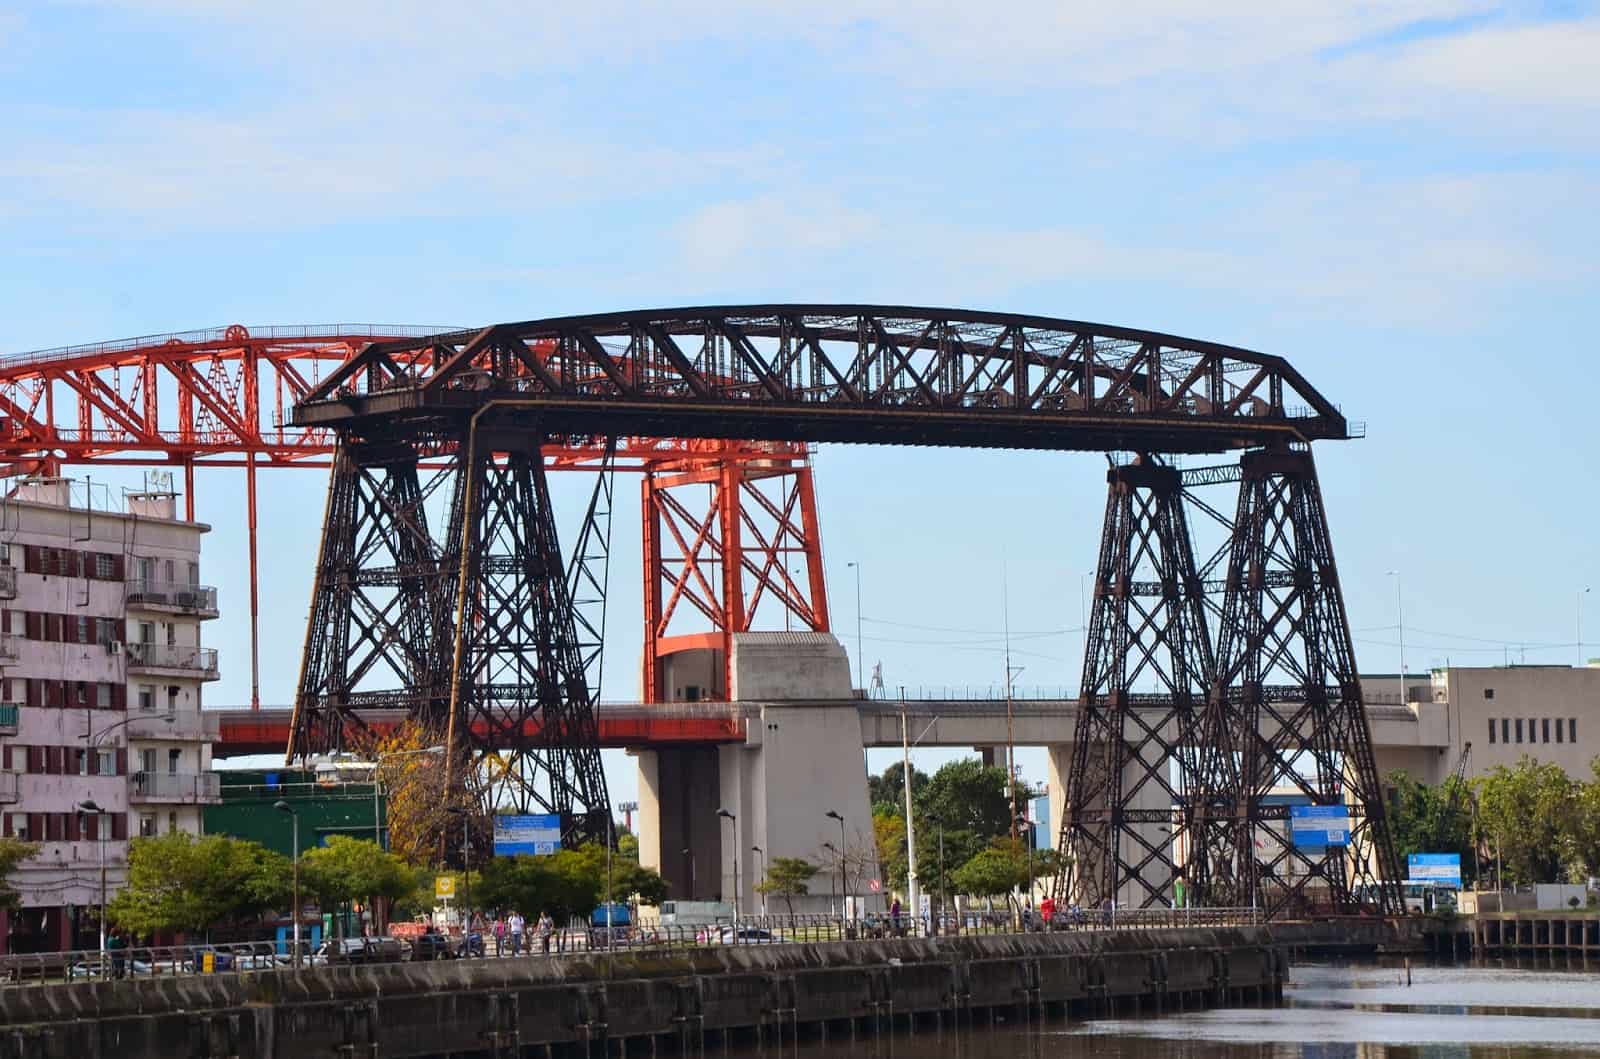 Puente Transbordador Nicolás Avellaneda in La Boca, Buenos Aires, Argentina